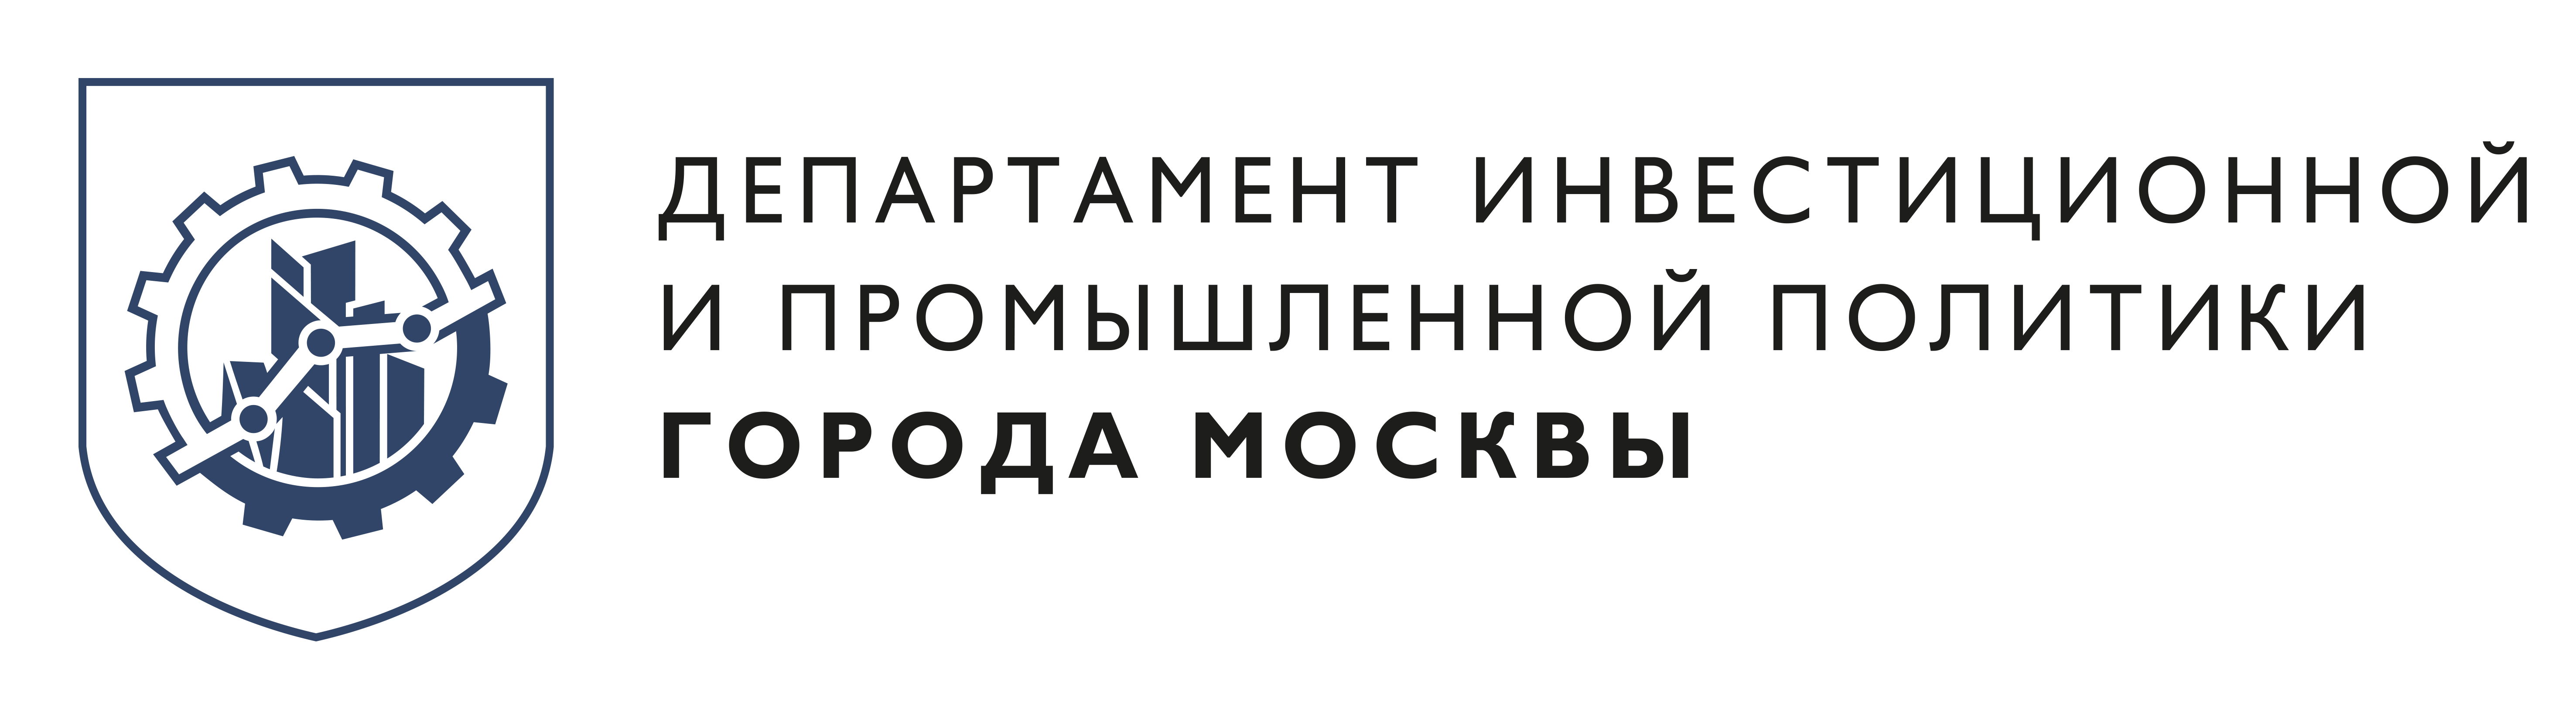 В ОЭЗ «Технополис Москва» запустили производство санитайзеров и дефицитных комплектующих для медоборудования - фото 1